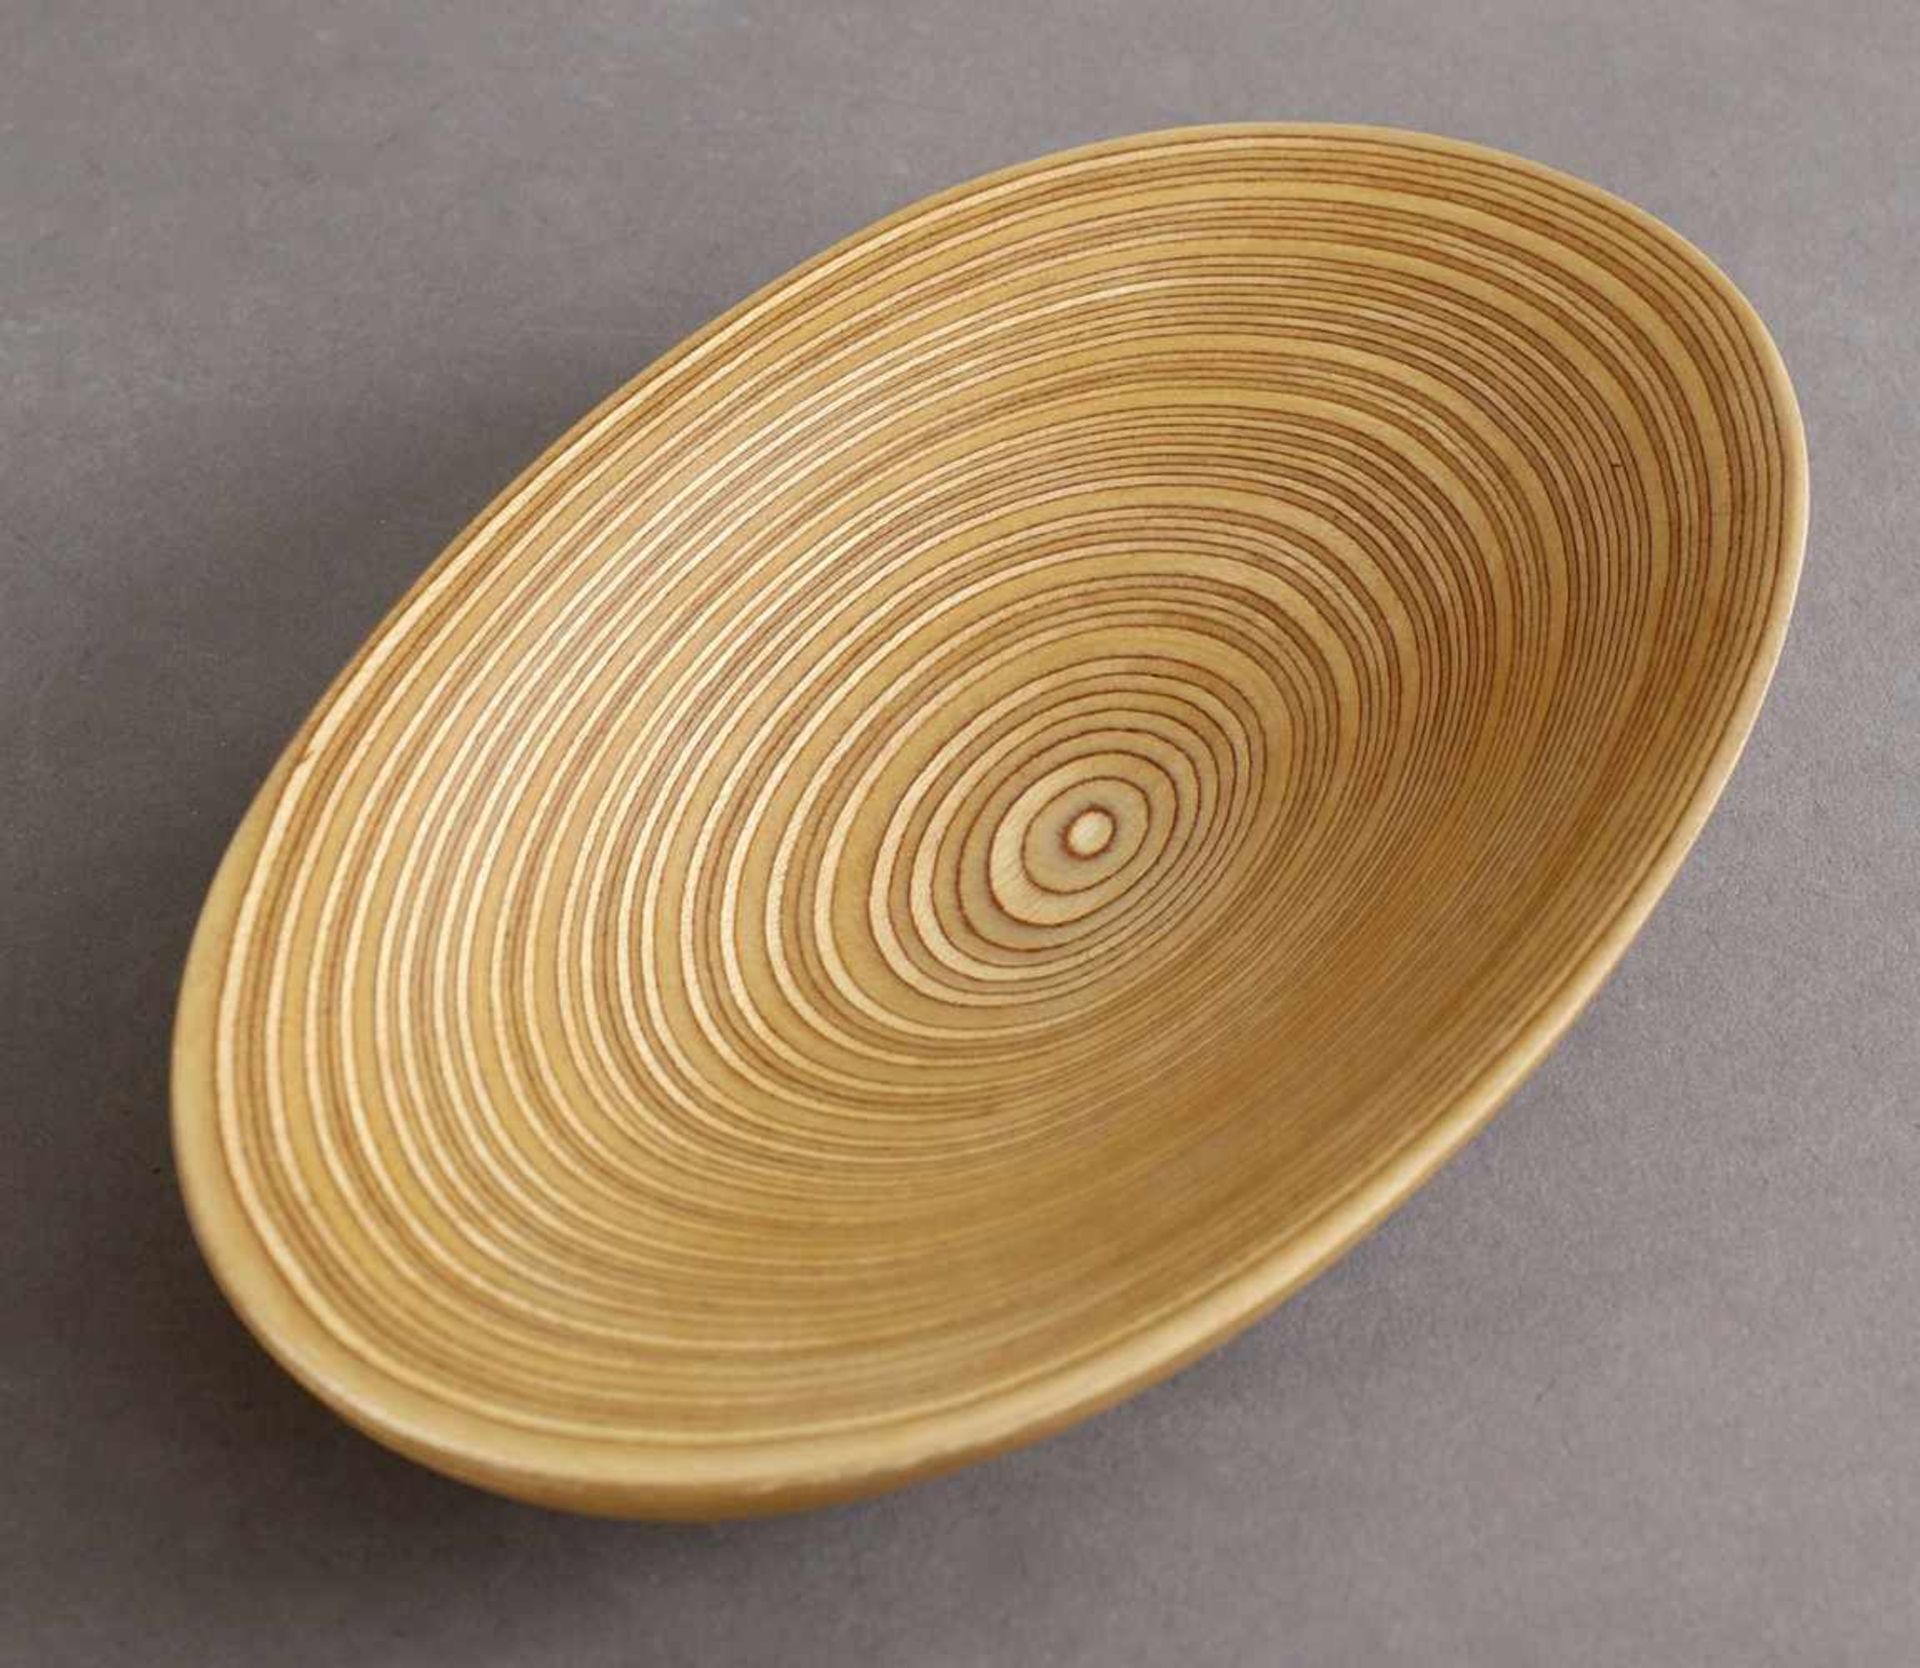 Tapio WirkkalaTapio Wirkkala wooden Clam / Shell BowlBowl. Designed in 1954. Birch plywood. 3.2 x